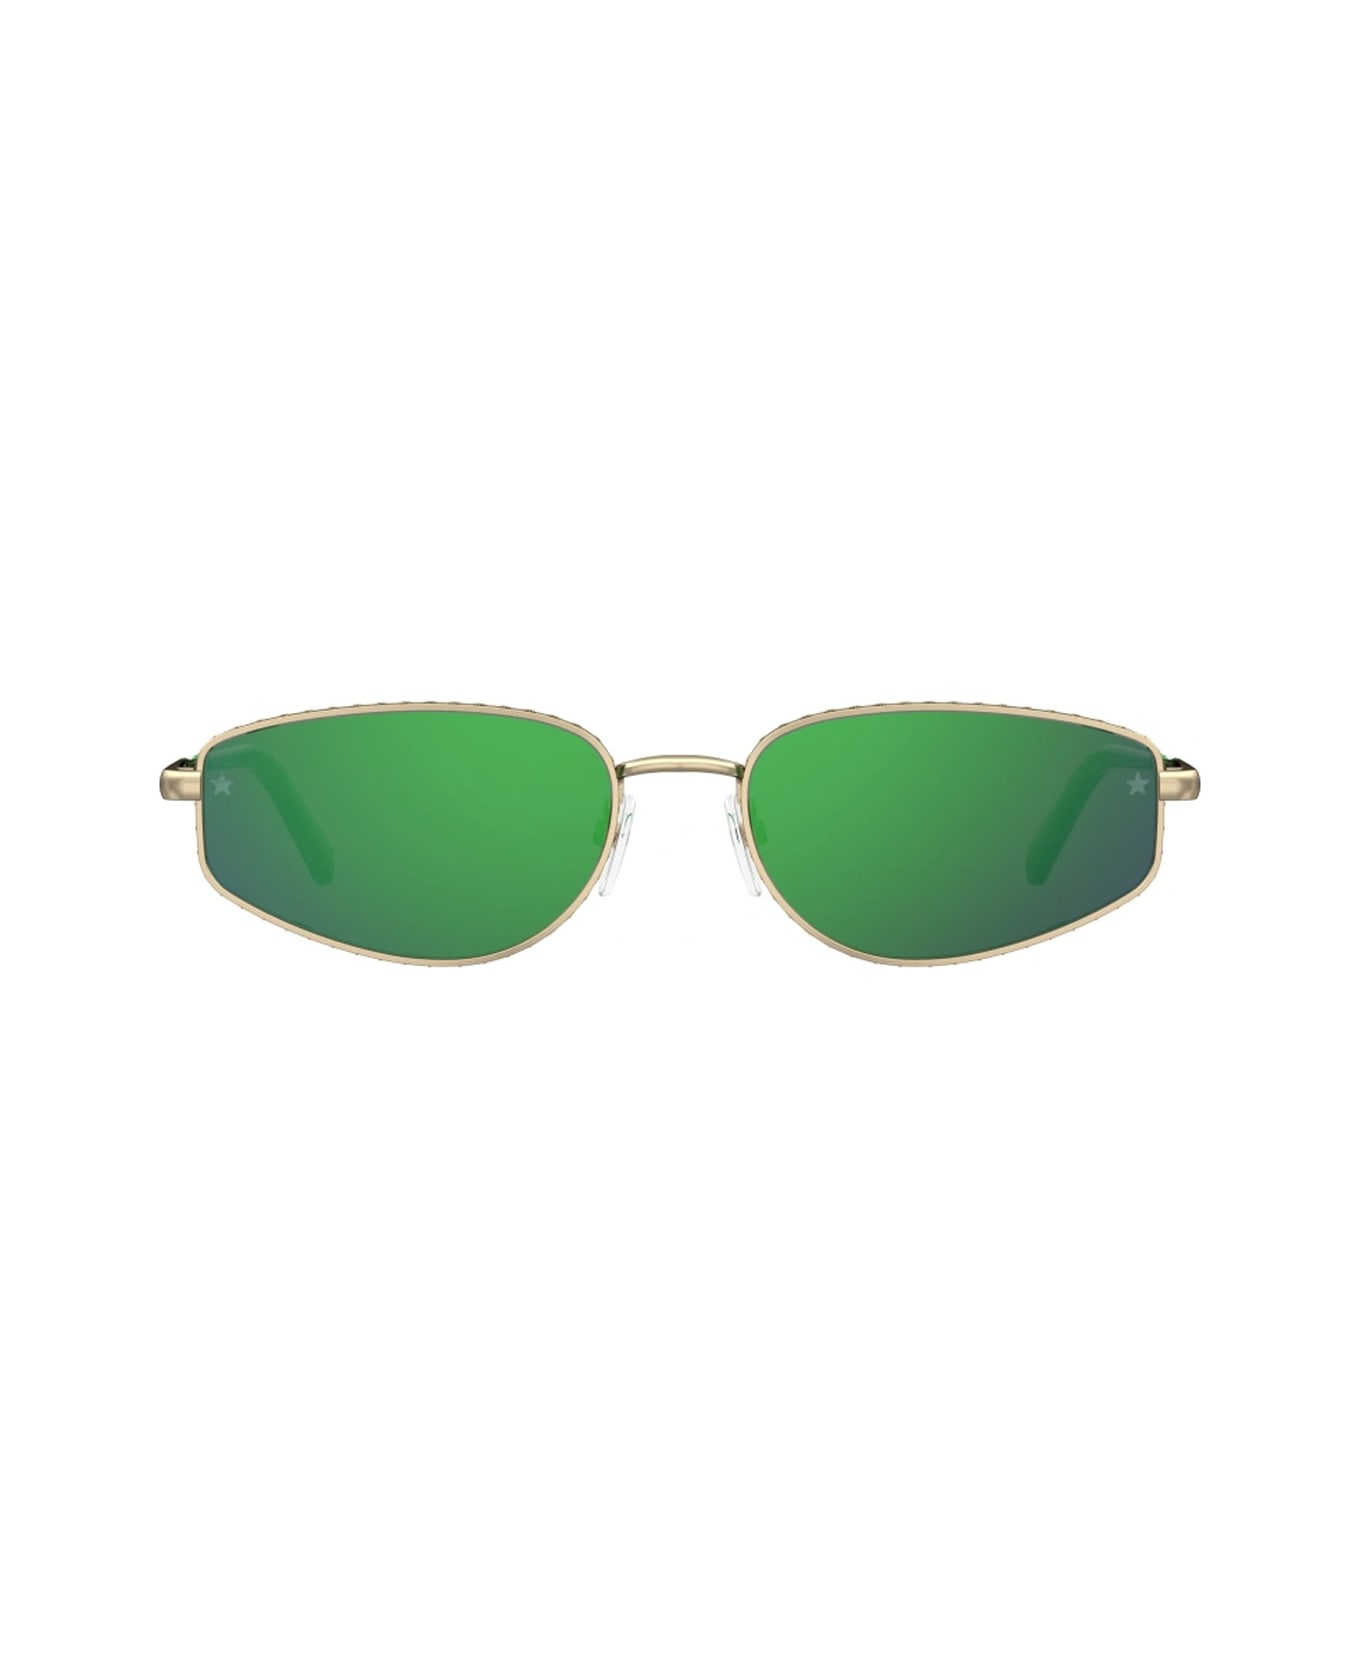 Chiara Ferragni Cf 7025/s Pef/z9 Gold Green Sunglasses - Oro サングラス